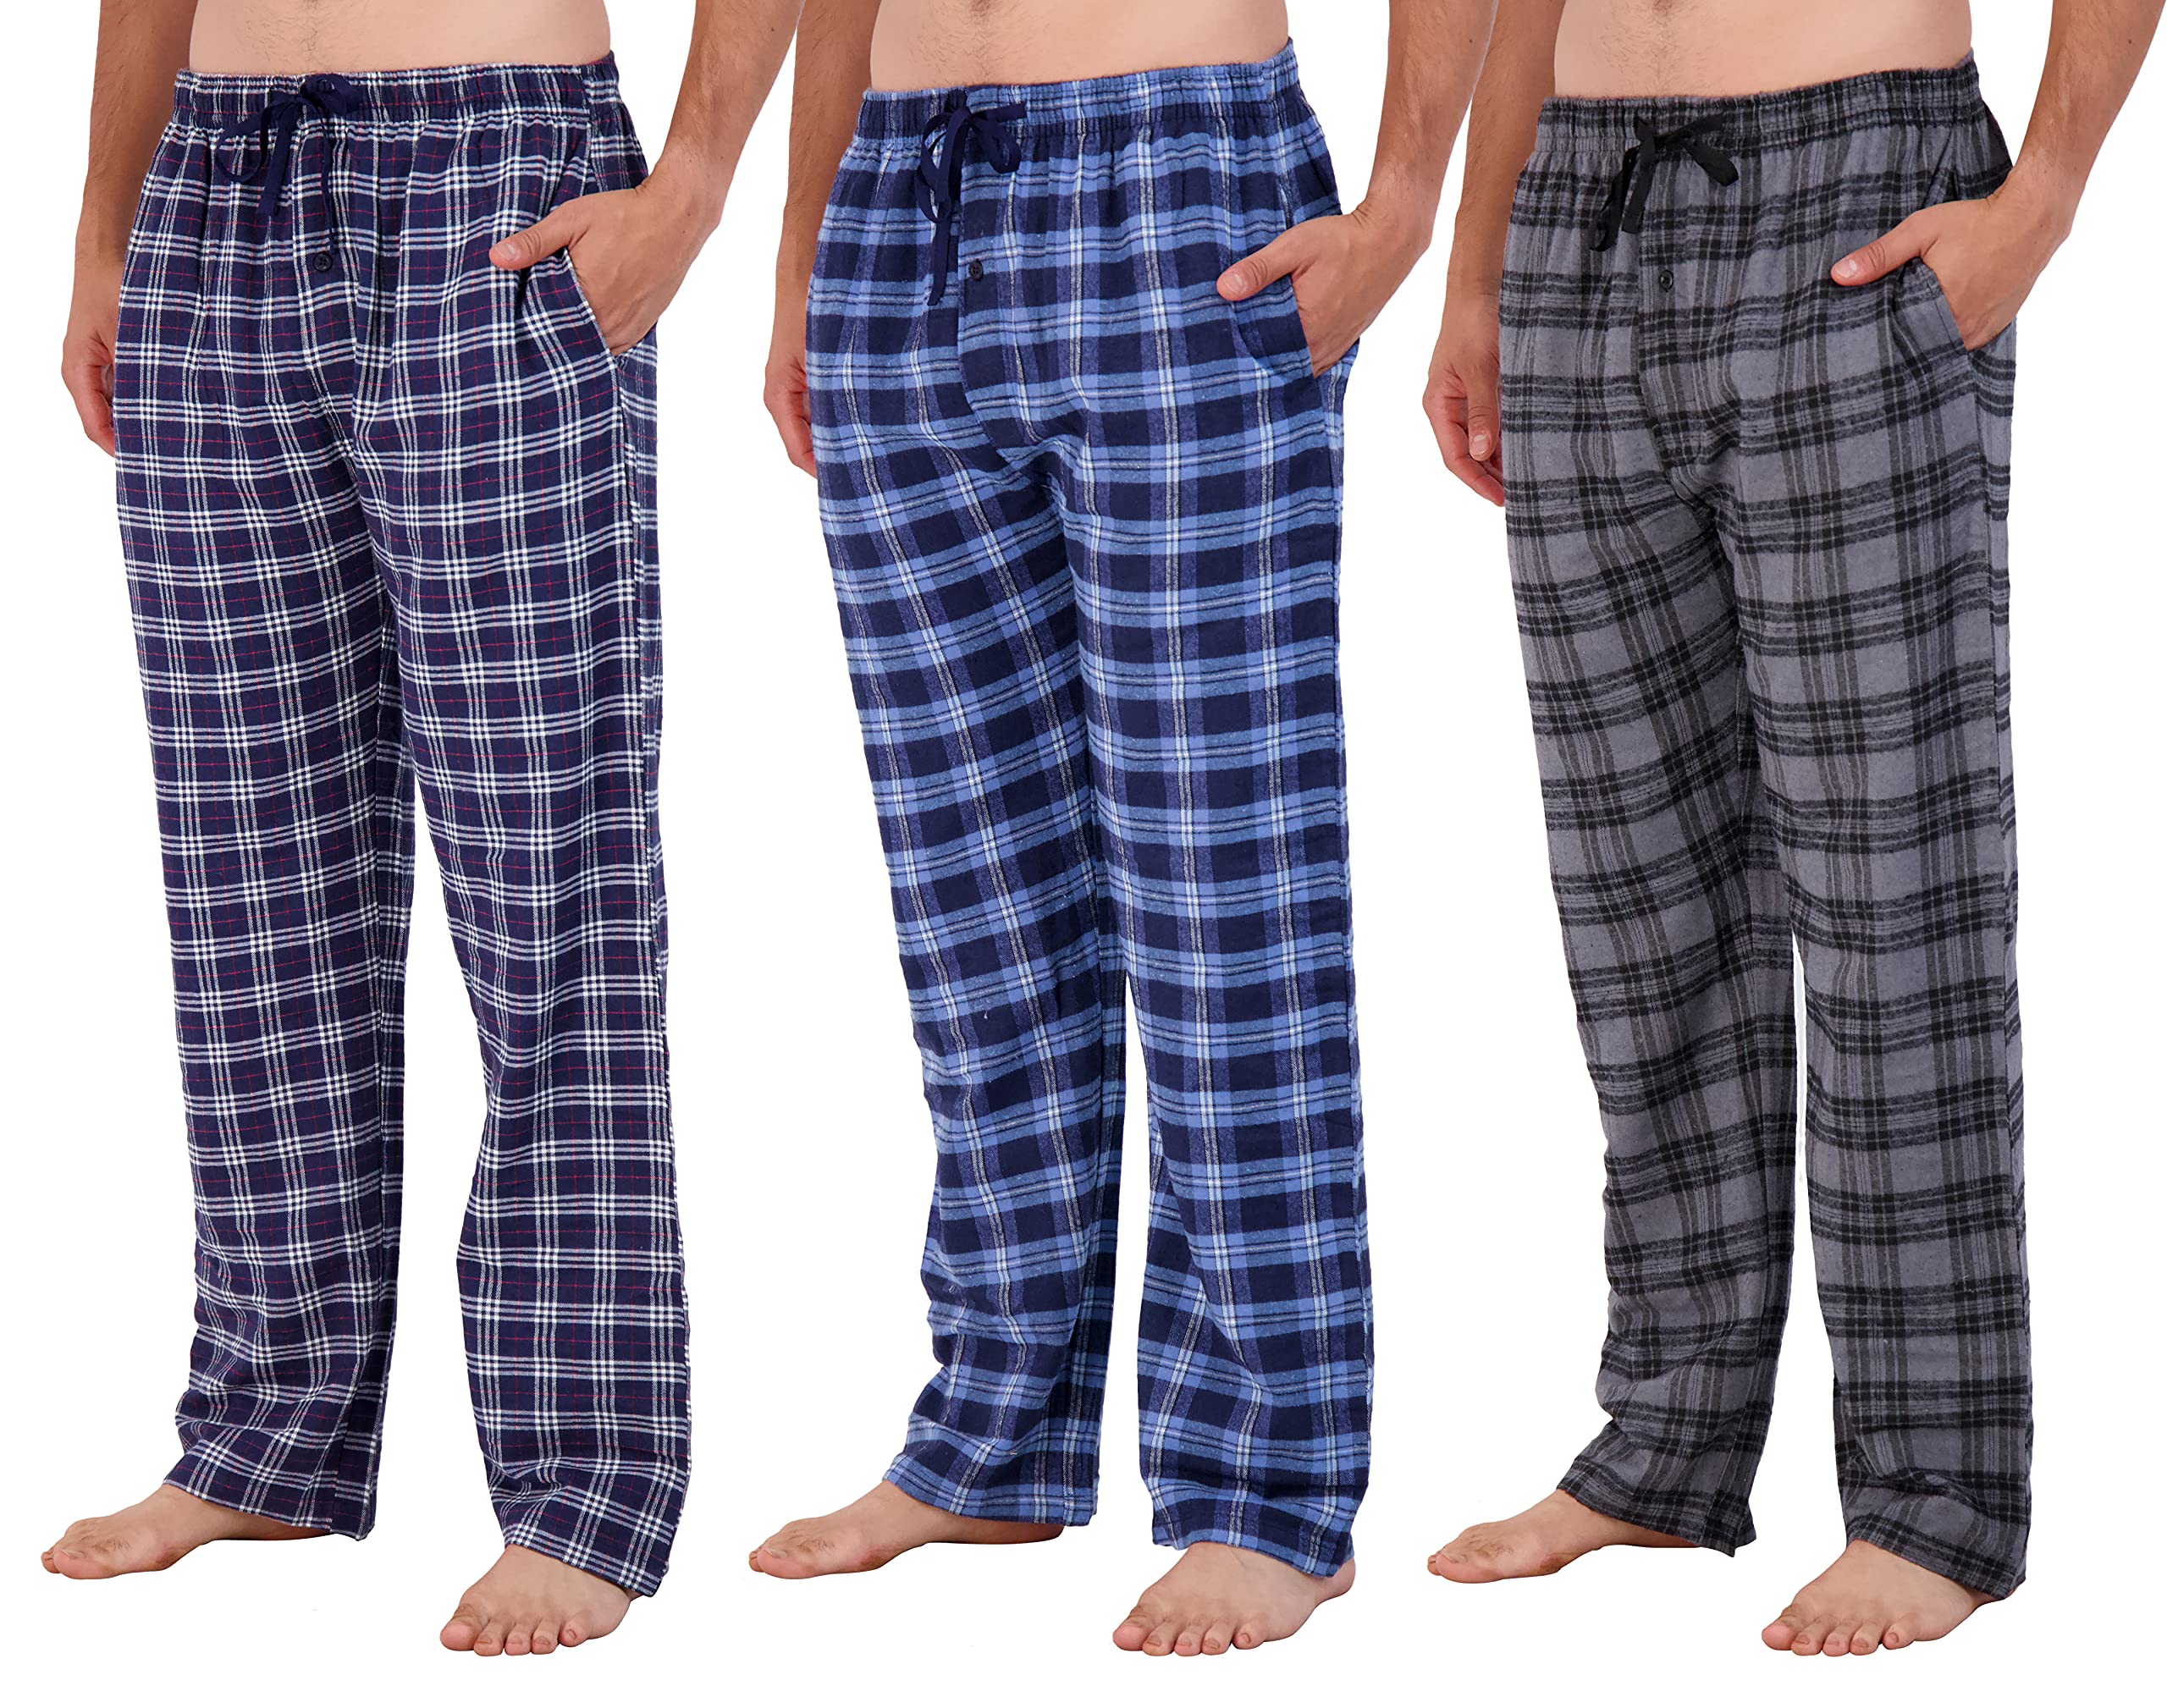 How To Wear Pajama Pants